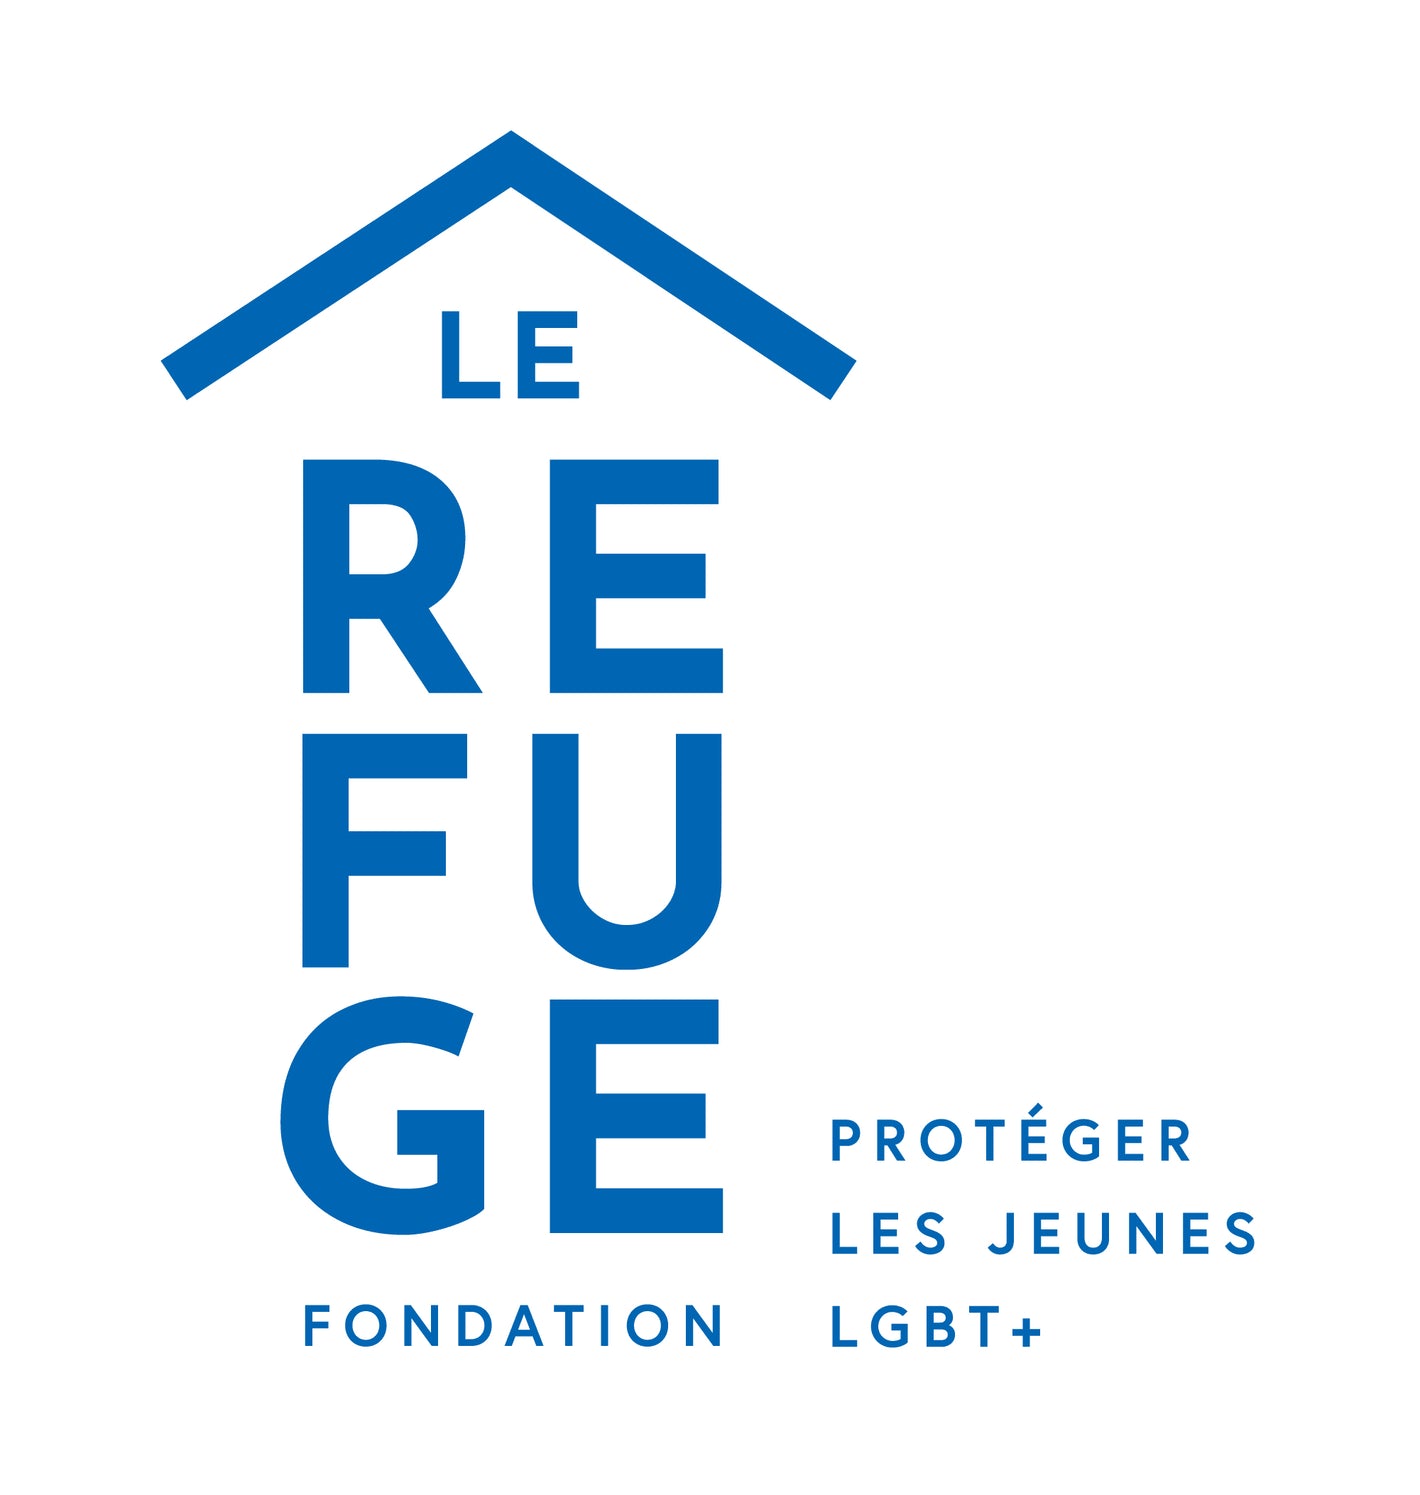 Fondation Le Refuge - Protéger les jeunes LGBT+